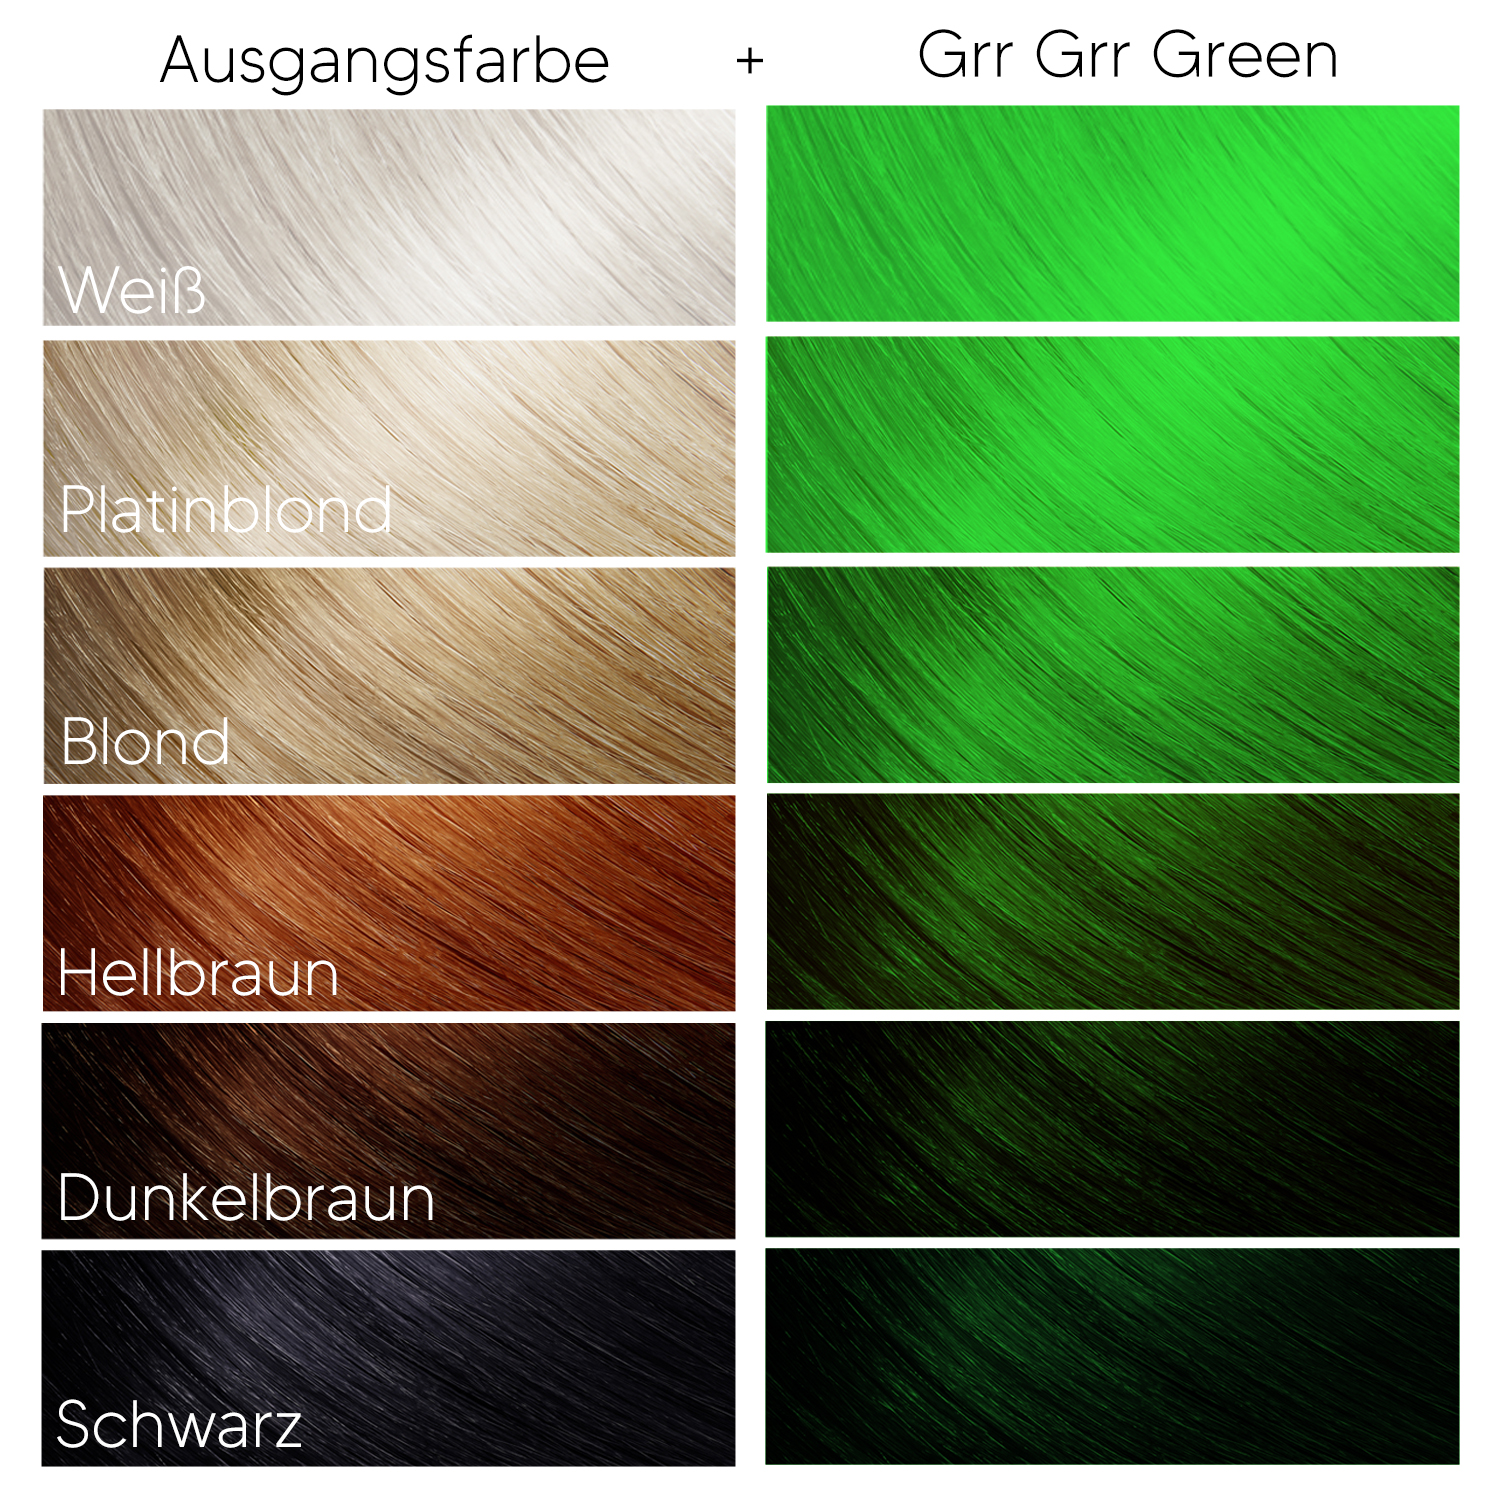 Grr Grr Green